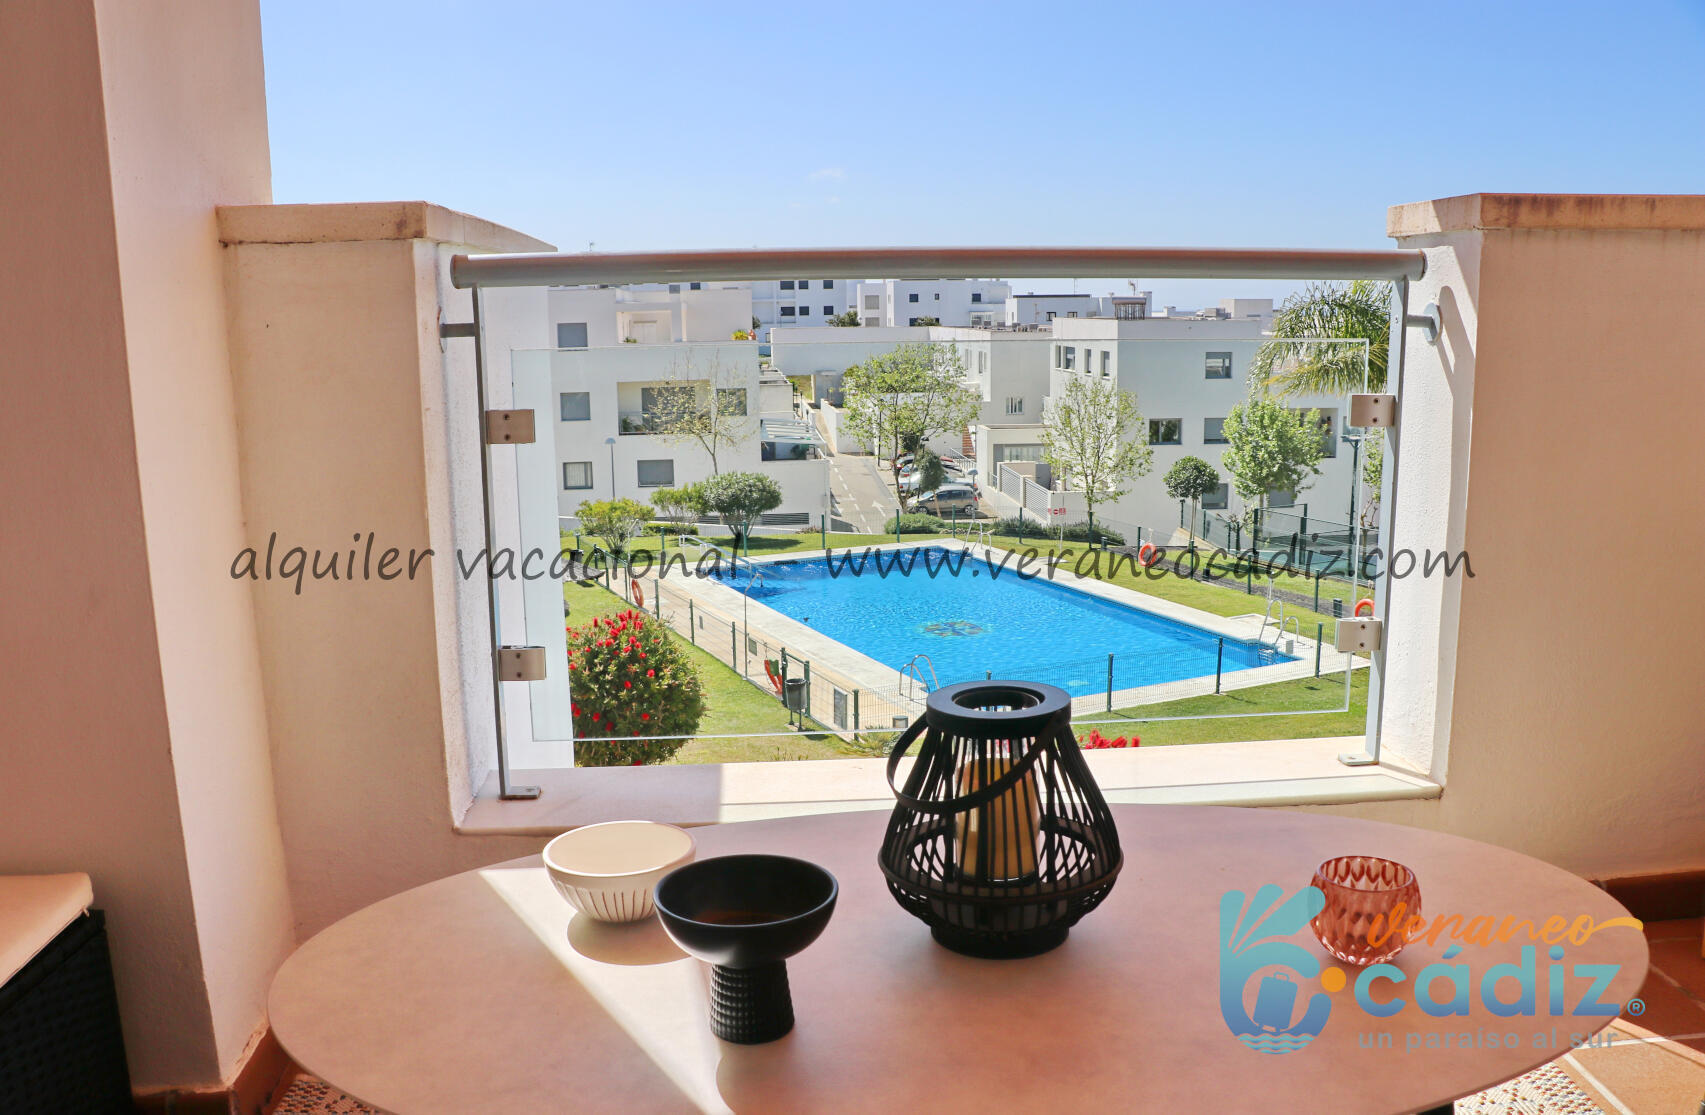 Alquiler vacacional residencial Puerta del Sol | Conil 529